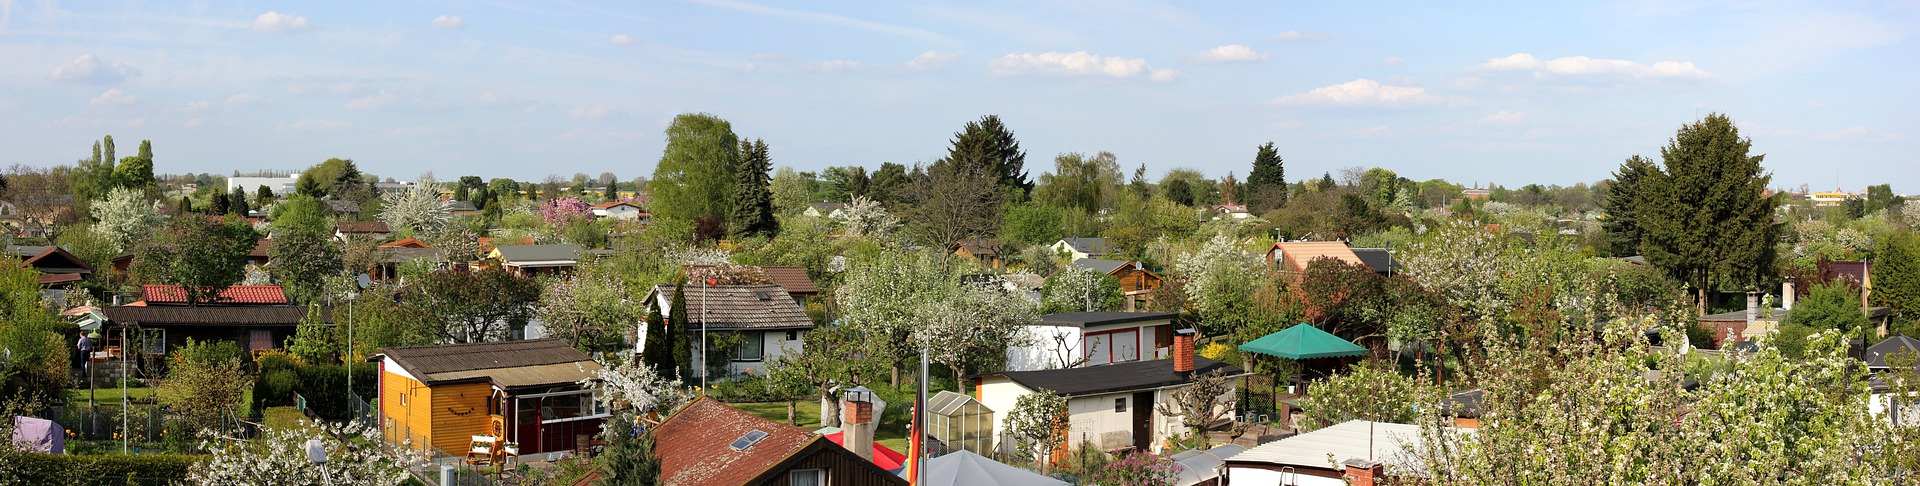 Kleingärten zum Pachten - Gartenfreunde Stuttgart e.V.